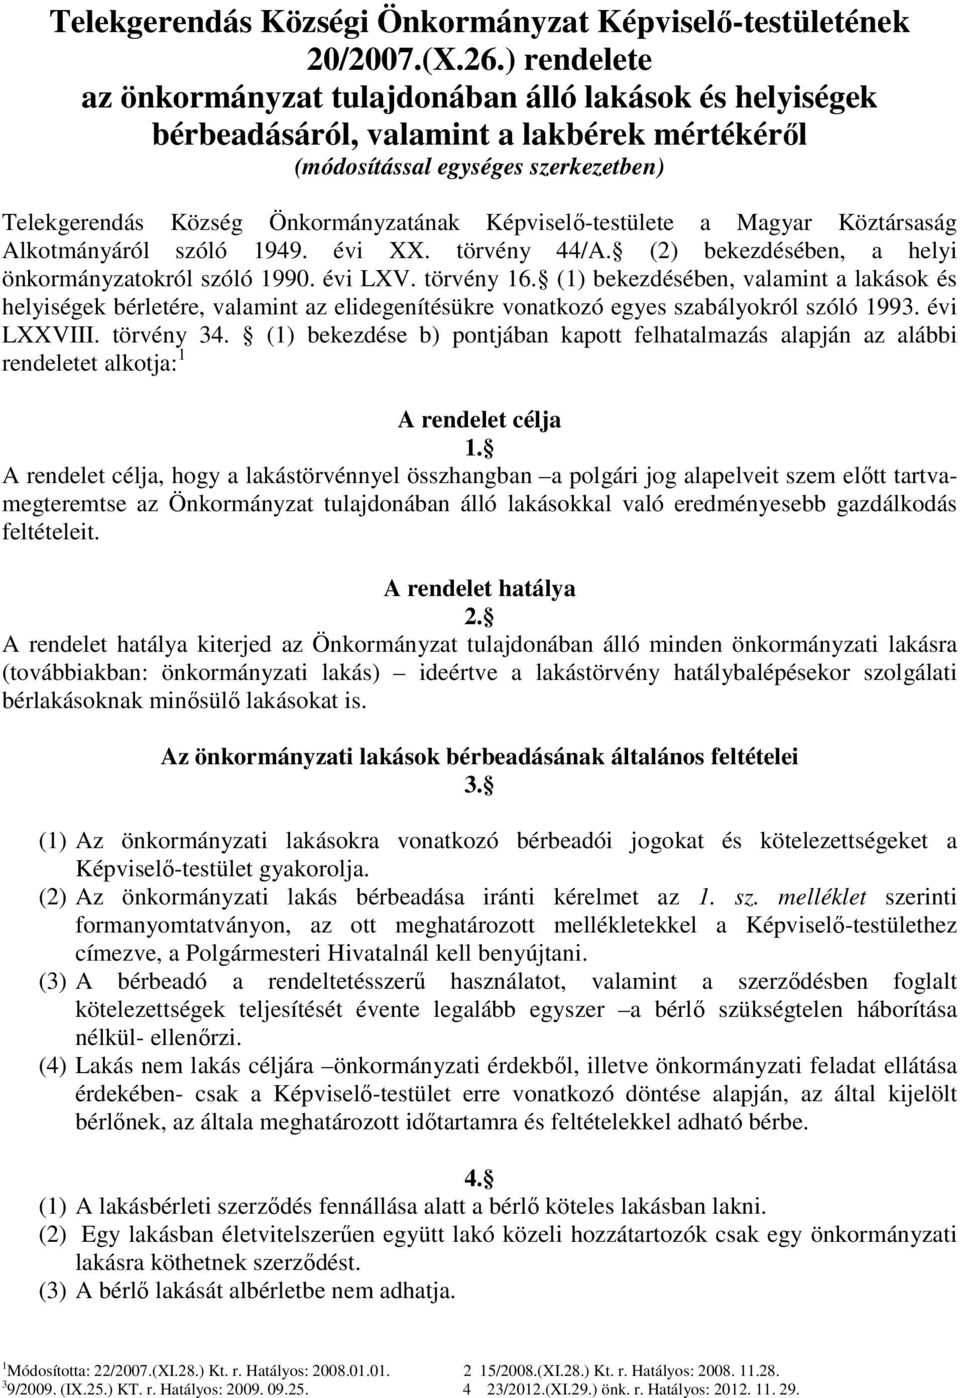 Képviselő-testülete a Magyar Köztársaság Alkotmányáról szóló 1949. évi XX. törvény 44/A. (2) bekezdésében, a helyi önkormányzatokról szóló 1990. évi LXV. törvény 16.